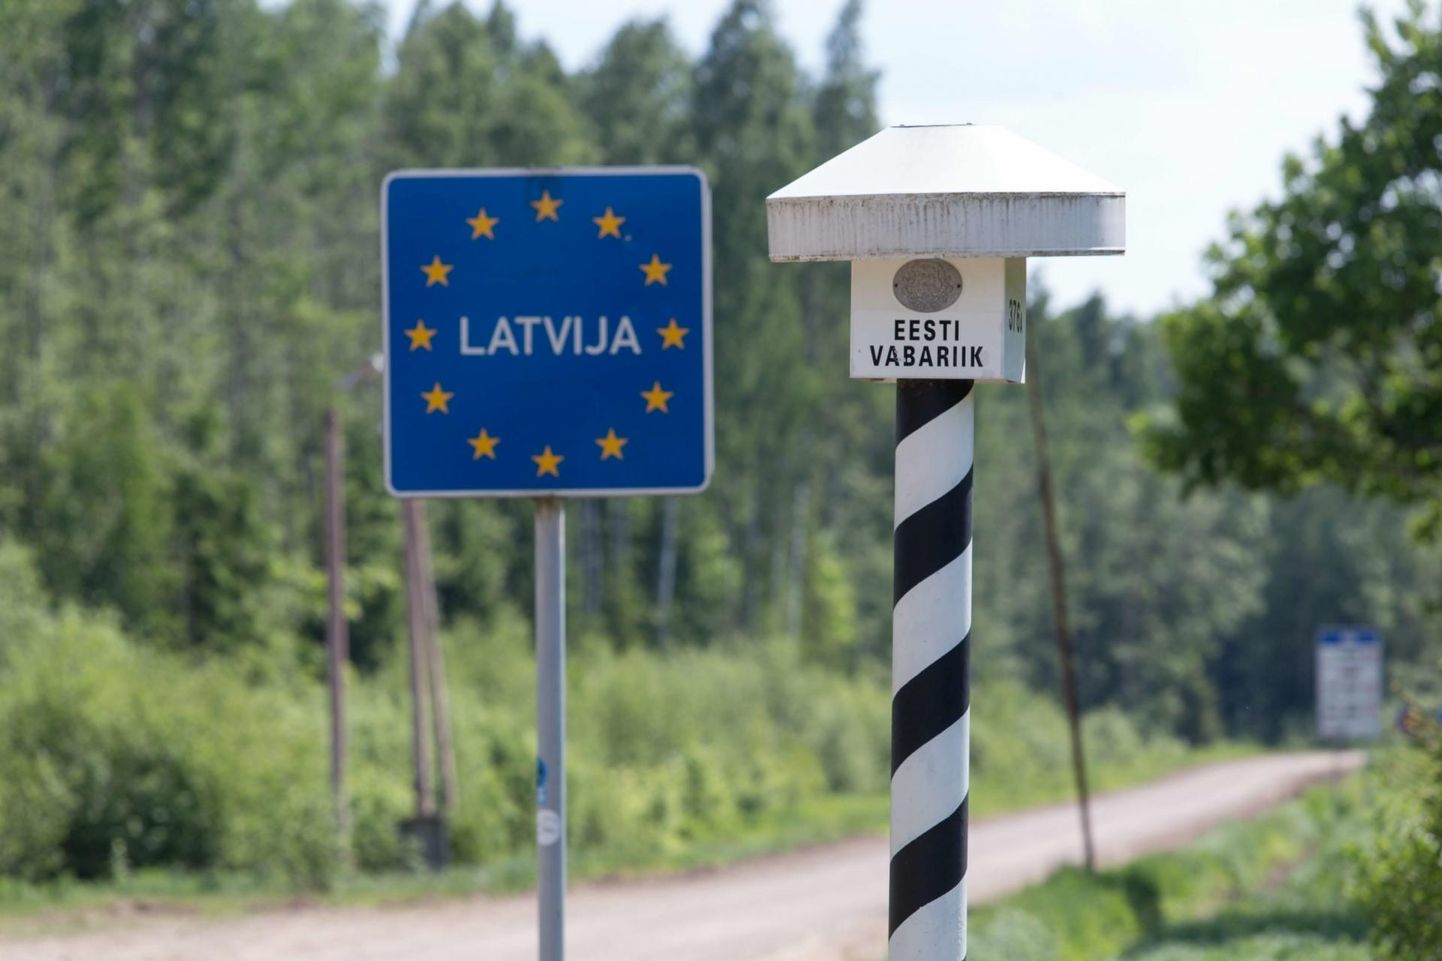 Isikud toimetati Eesti-Läti piirile.
Elmo Riig/Sakala